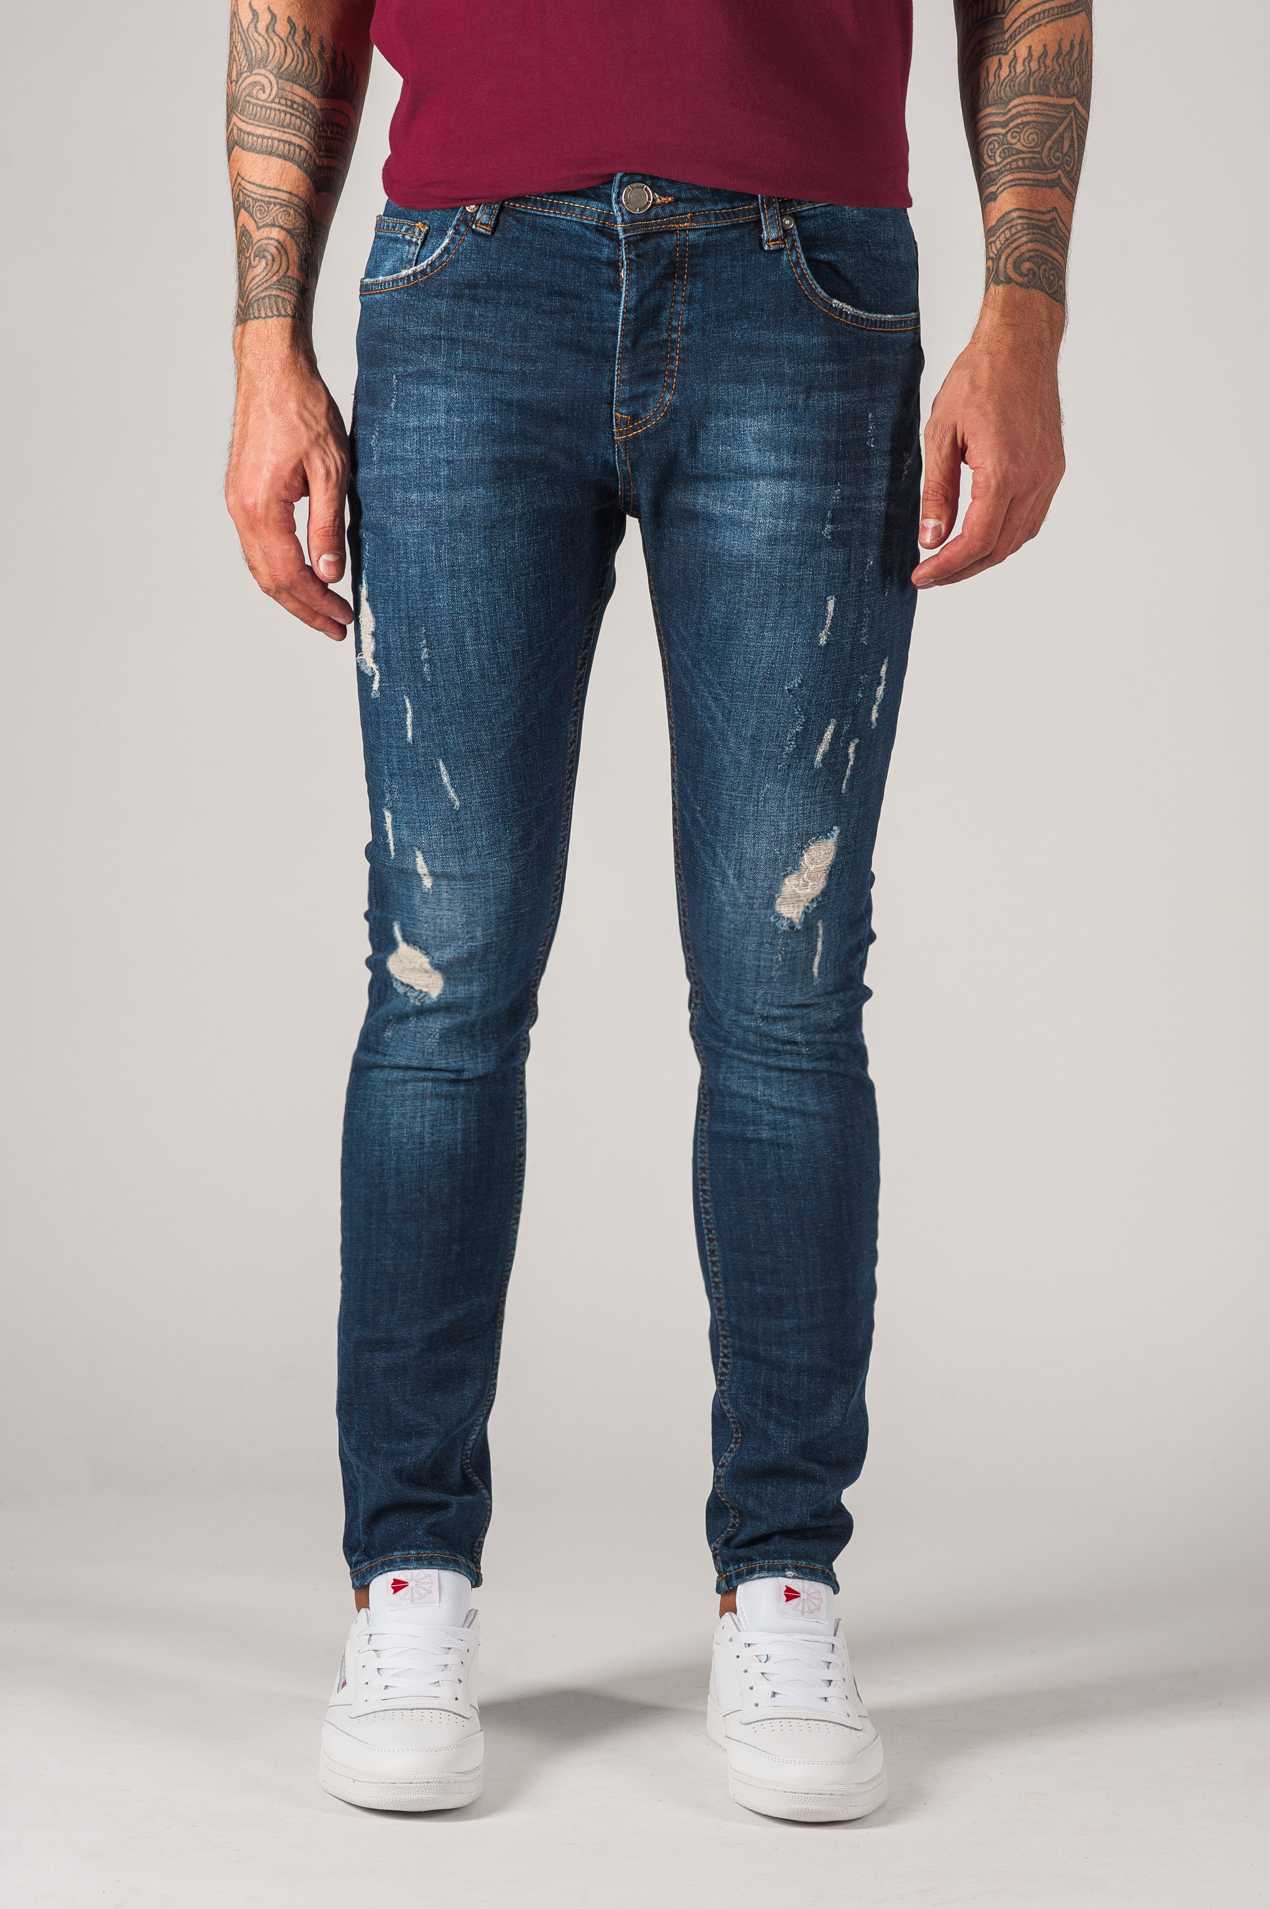 джинсы с коноплей